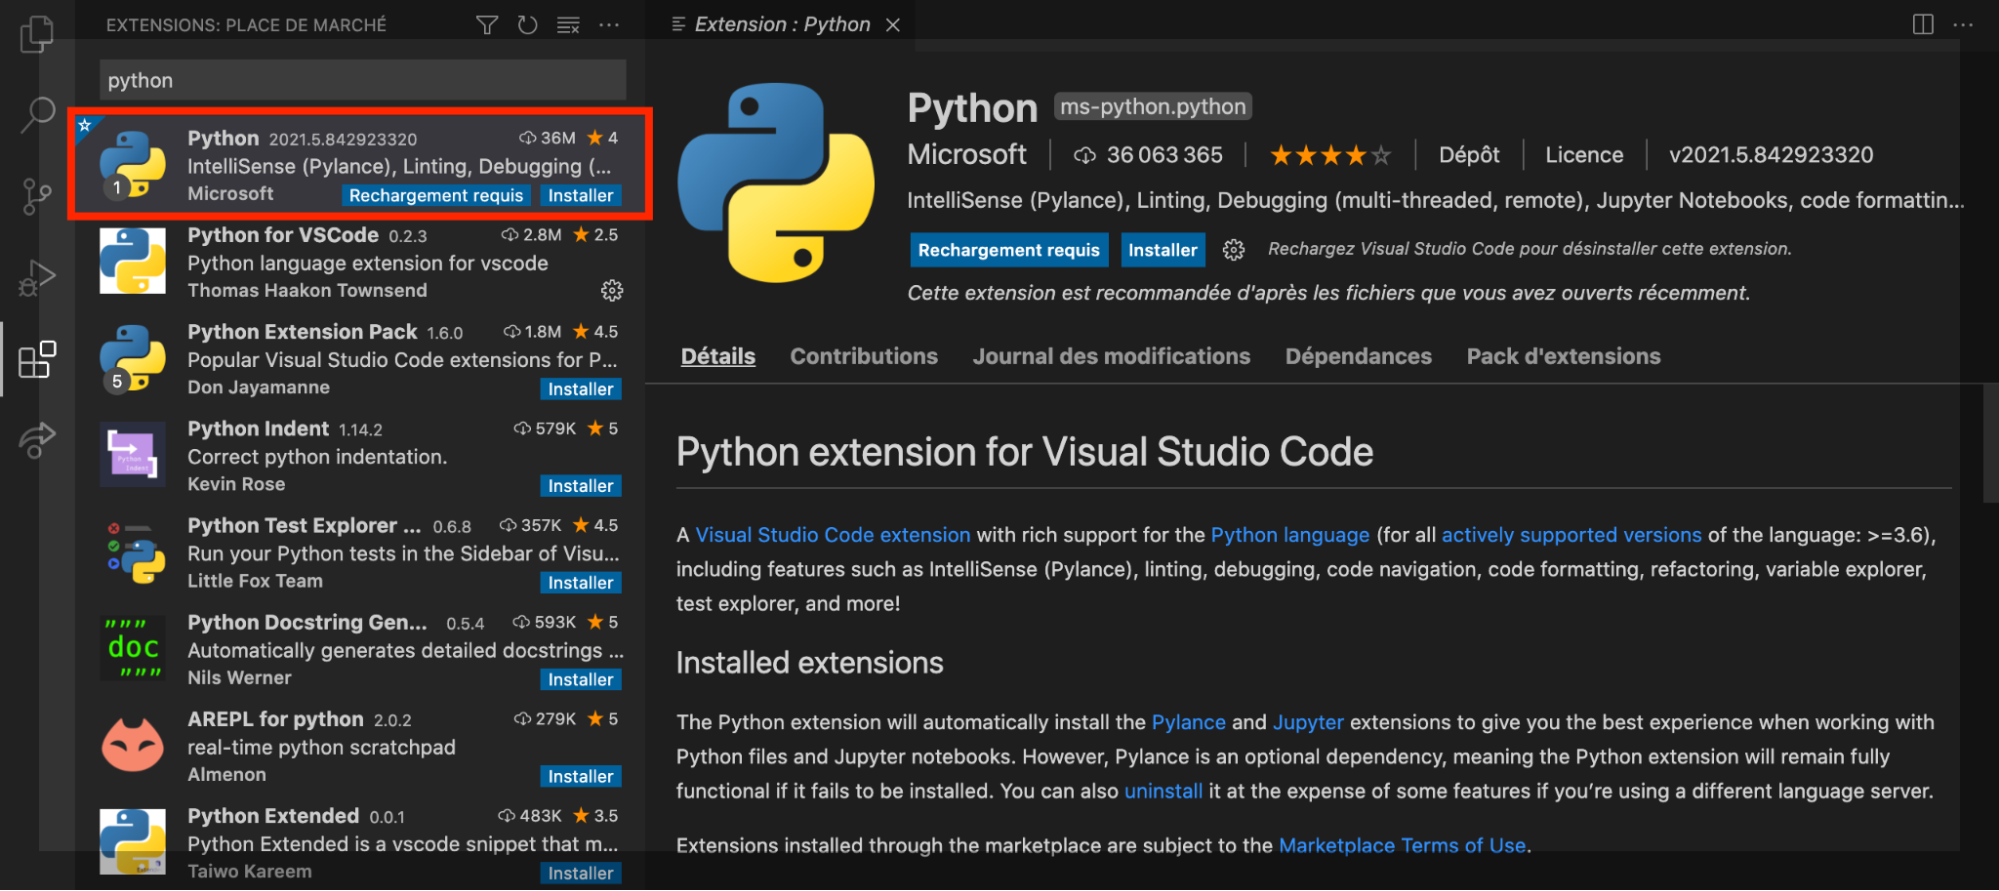 En cliquant sur l’extension Python, une petite fenêtre avec toutes ses informations s'ouvre.